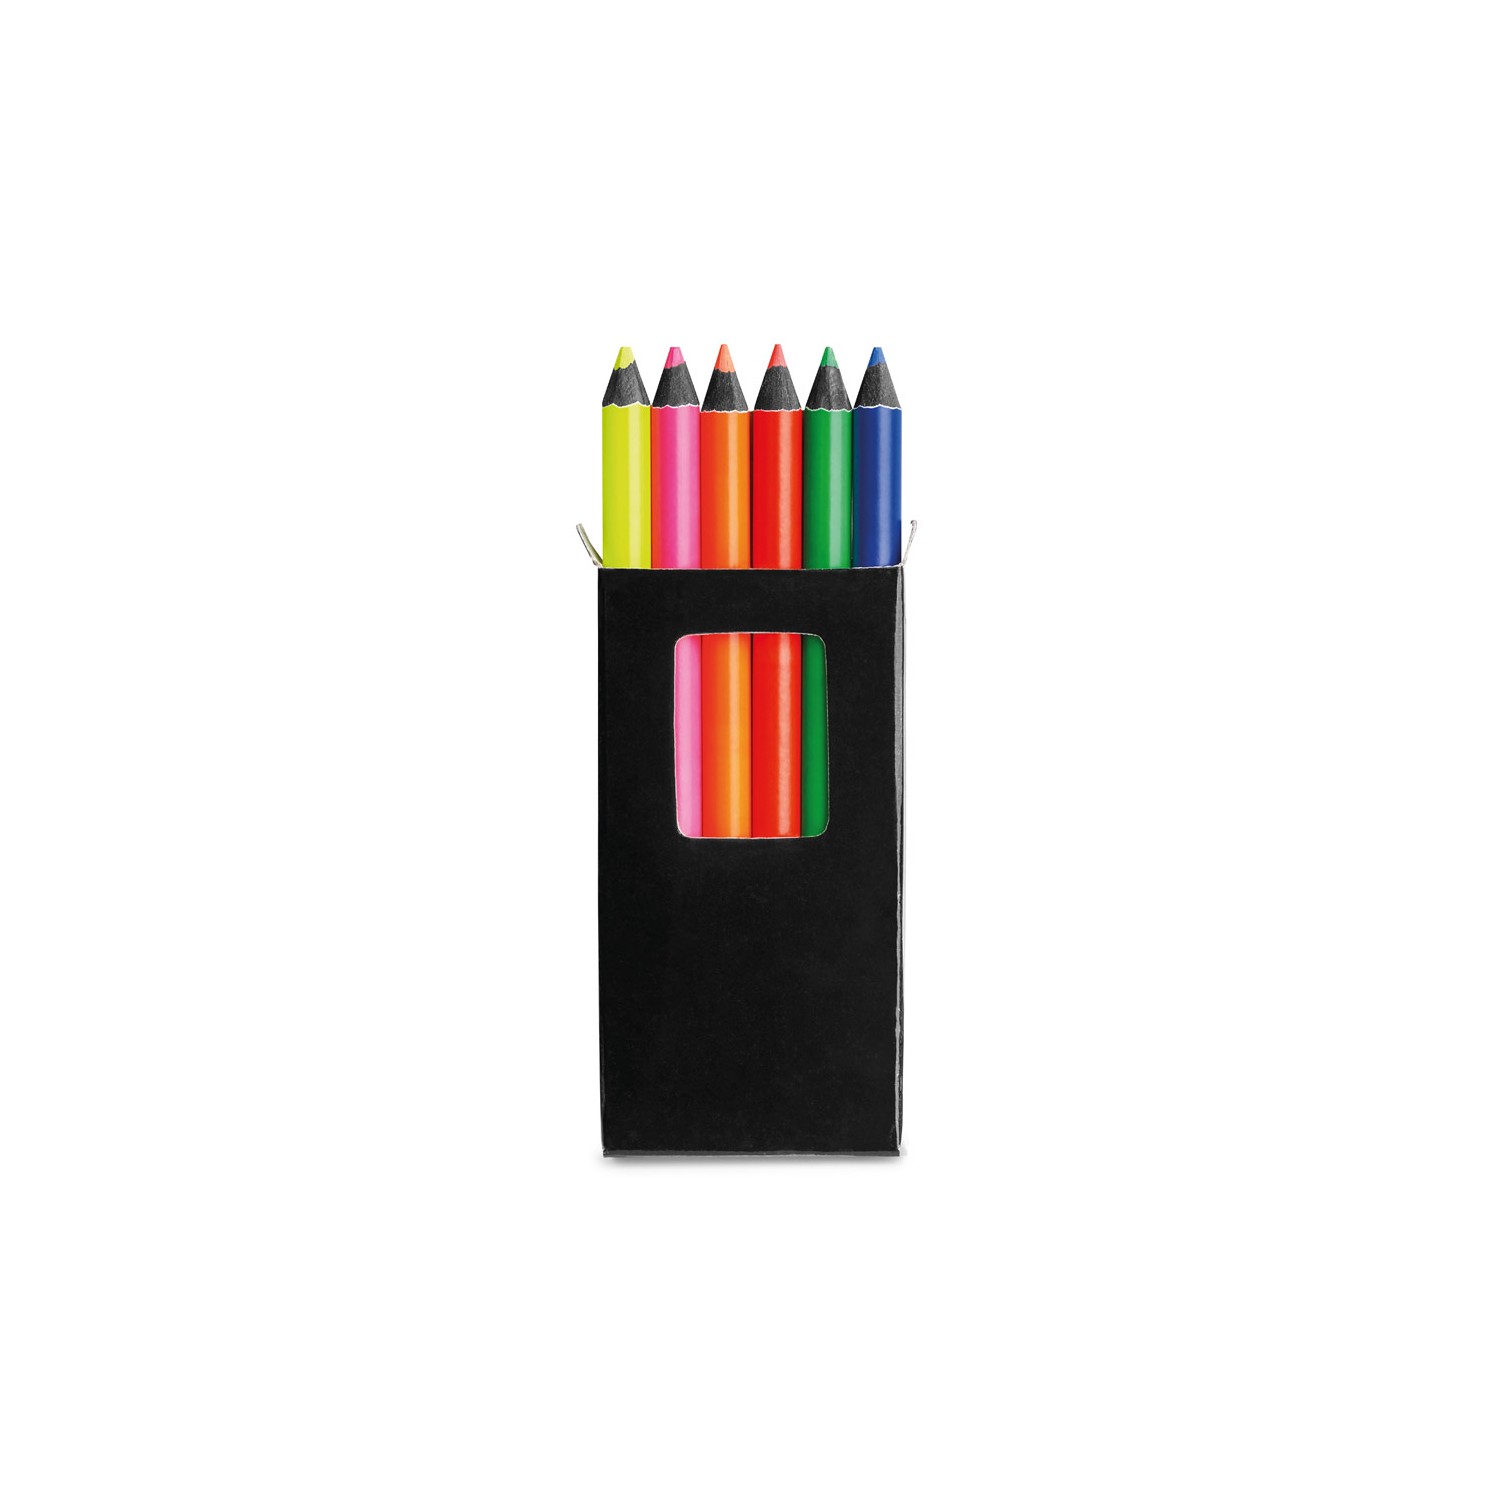 Caixa com 6 lápis de cor Memling